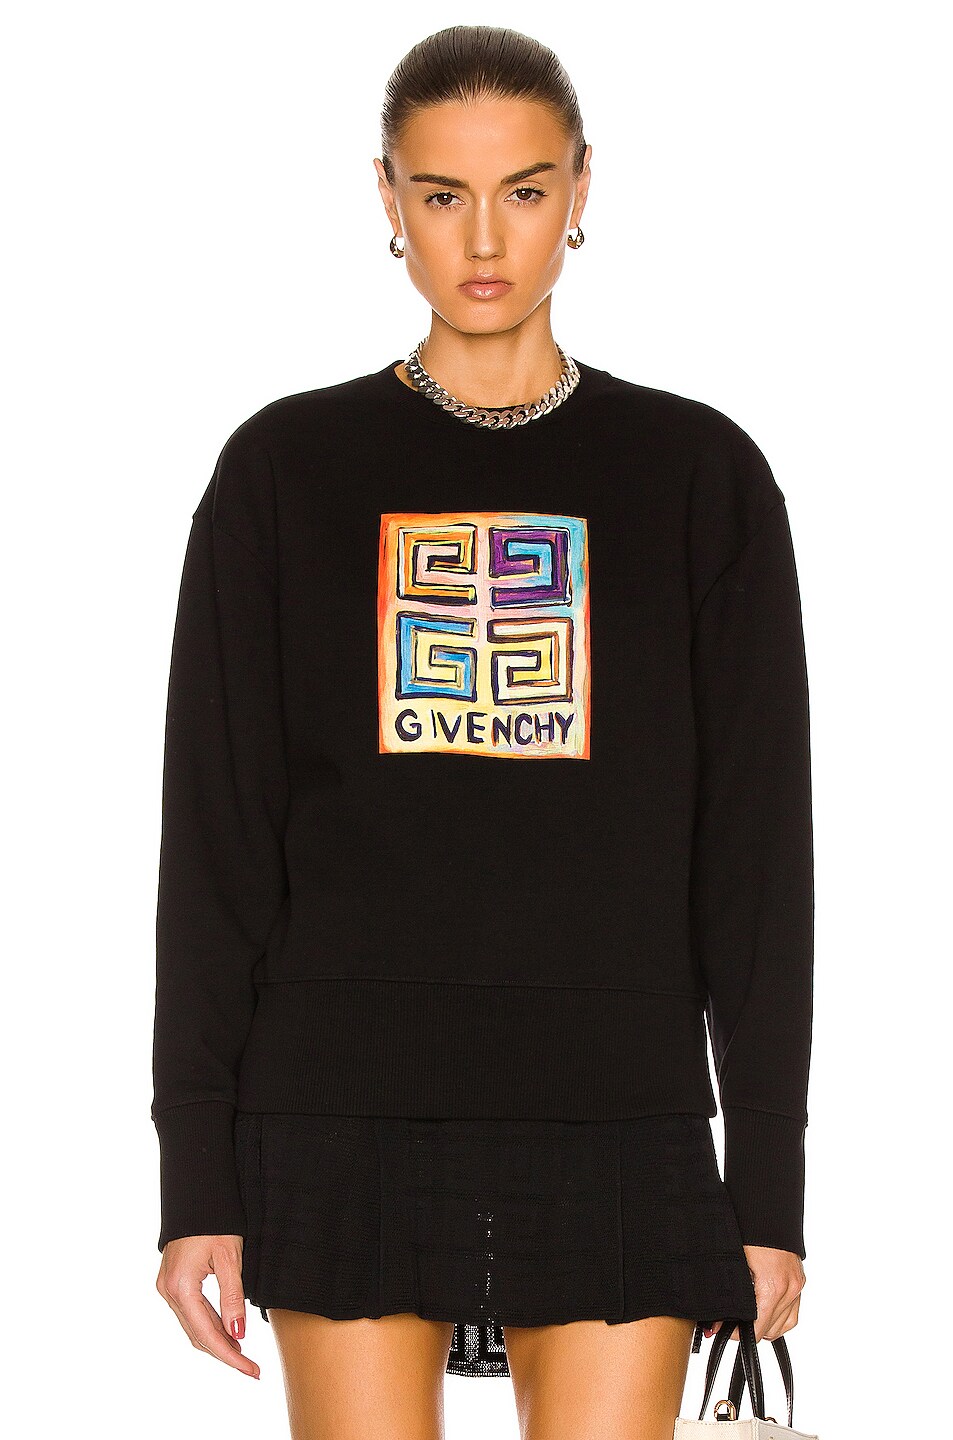 Givenchy Crewneck Sweatshirt in Black | FWRD